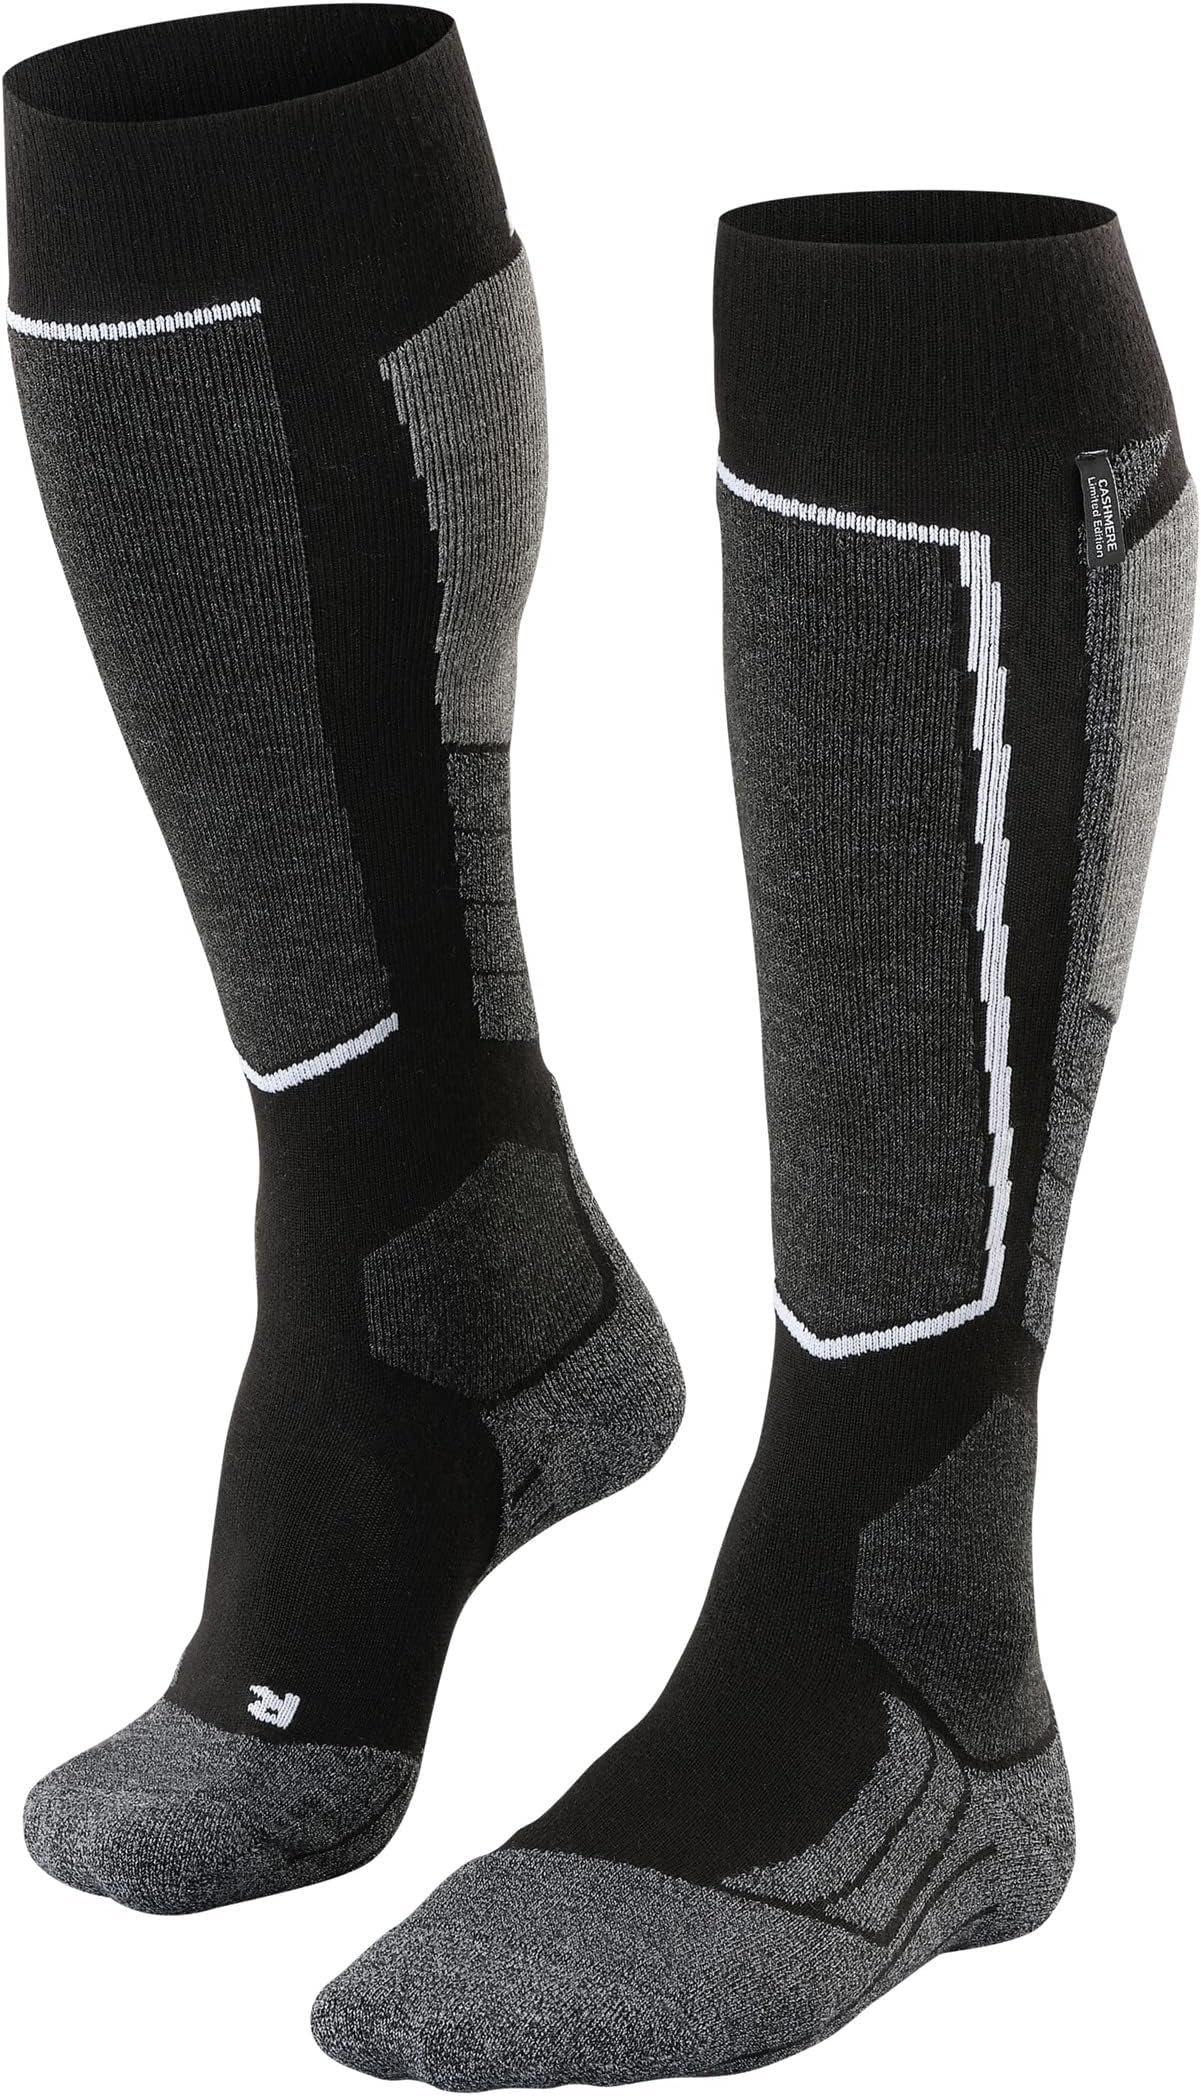 SK2 Кашемировые лыжные носки среднего размера до колена, 1 пара Falke, цвет Black Mix